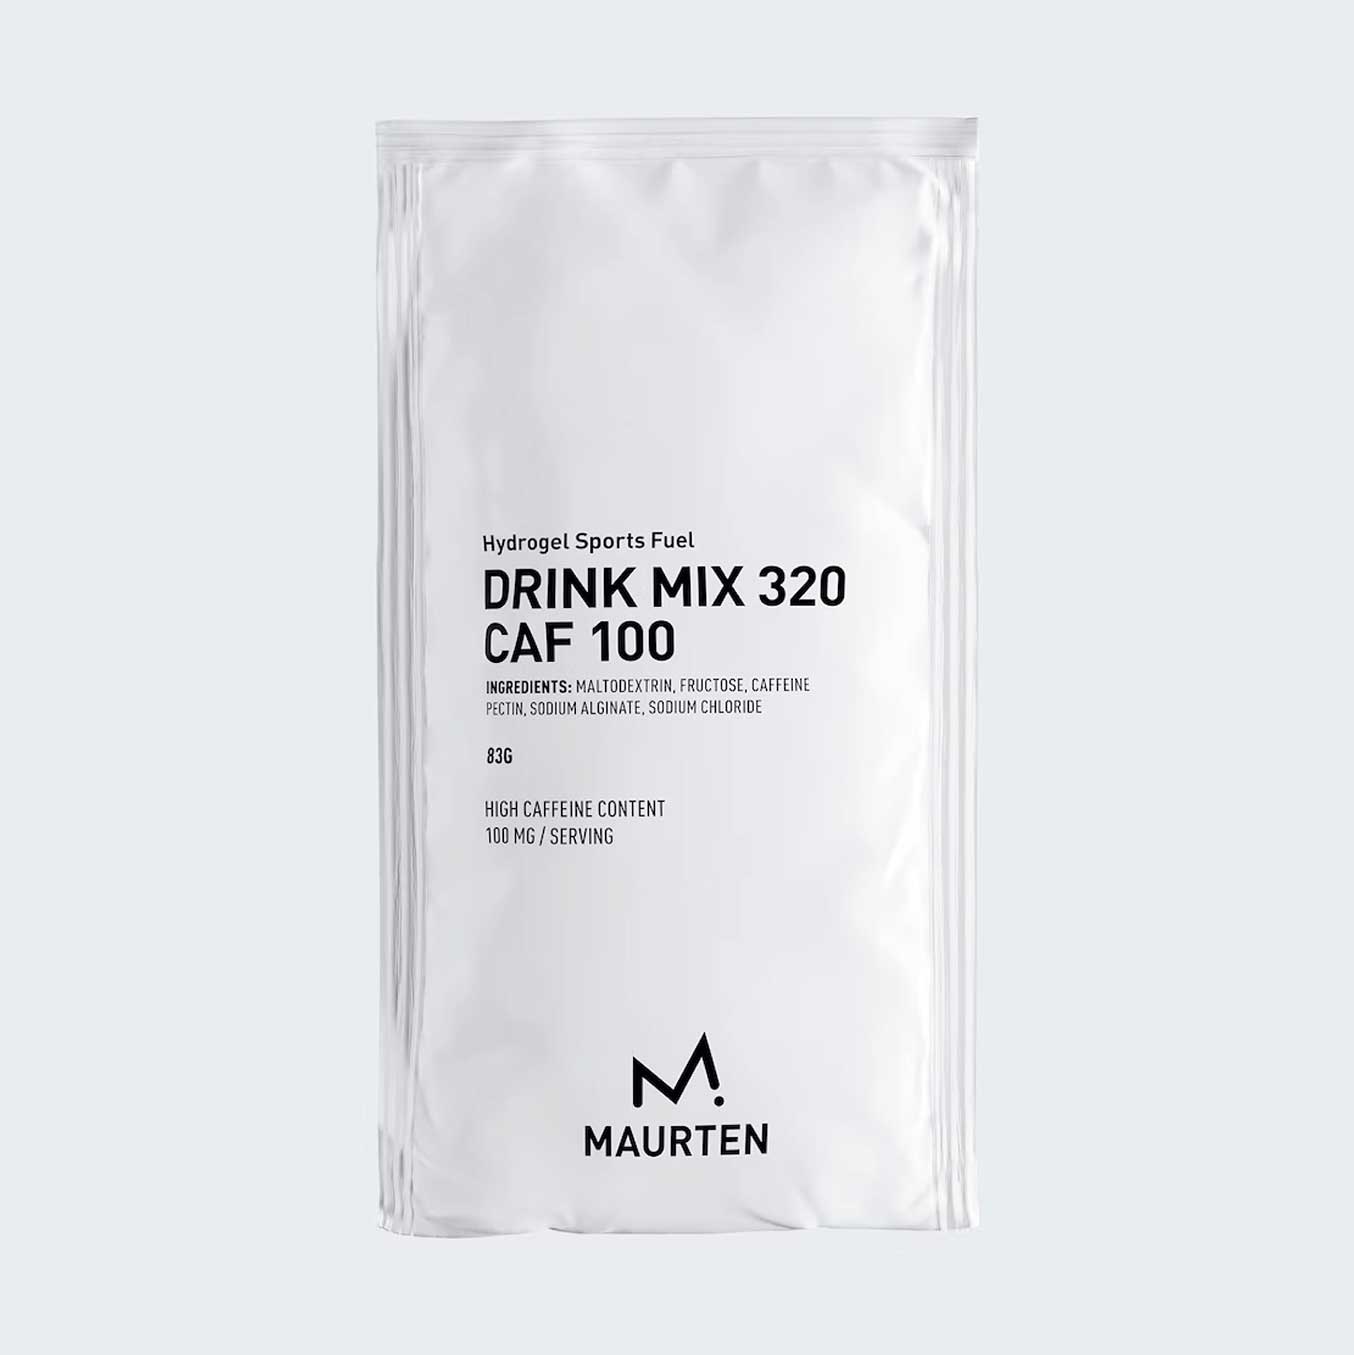 Maurten Drink Mix 320 CAF 100, 83g